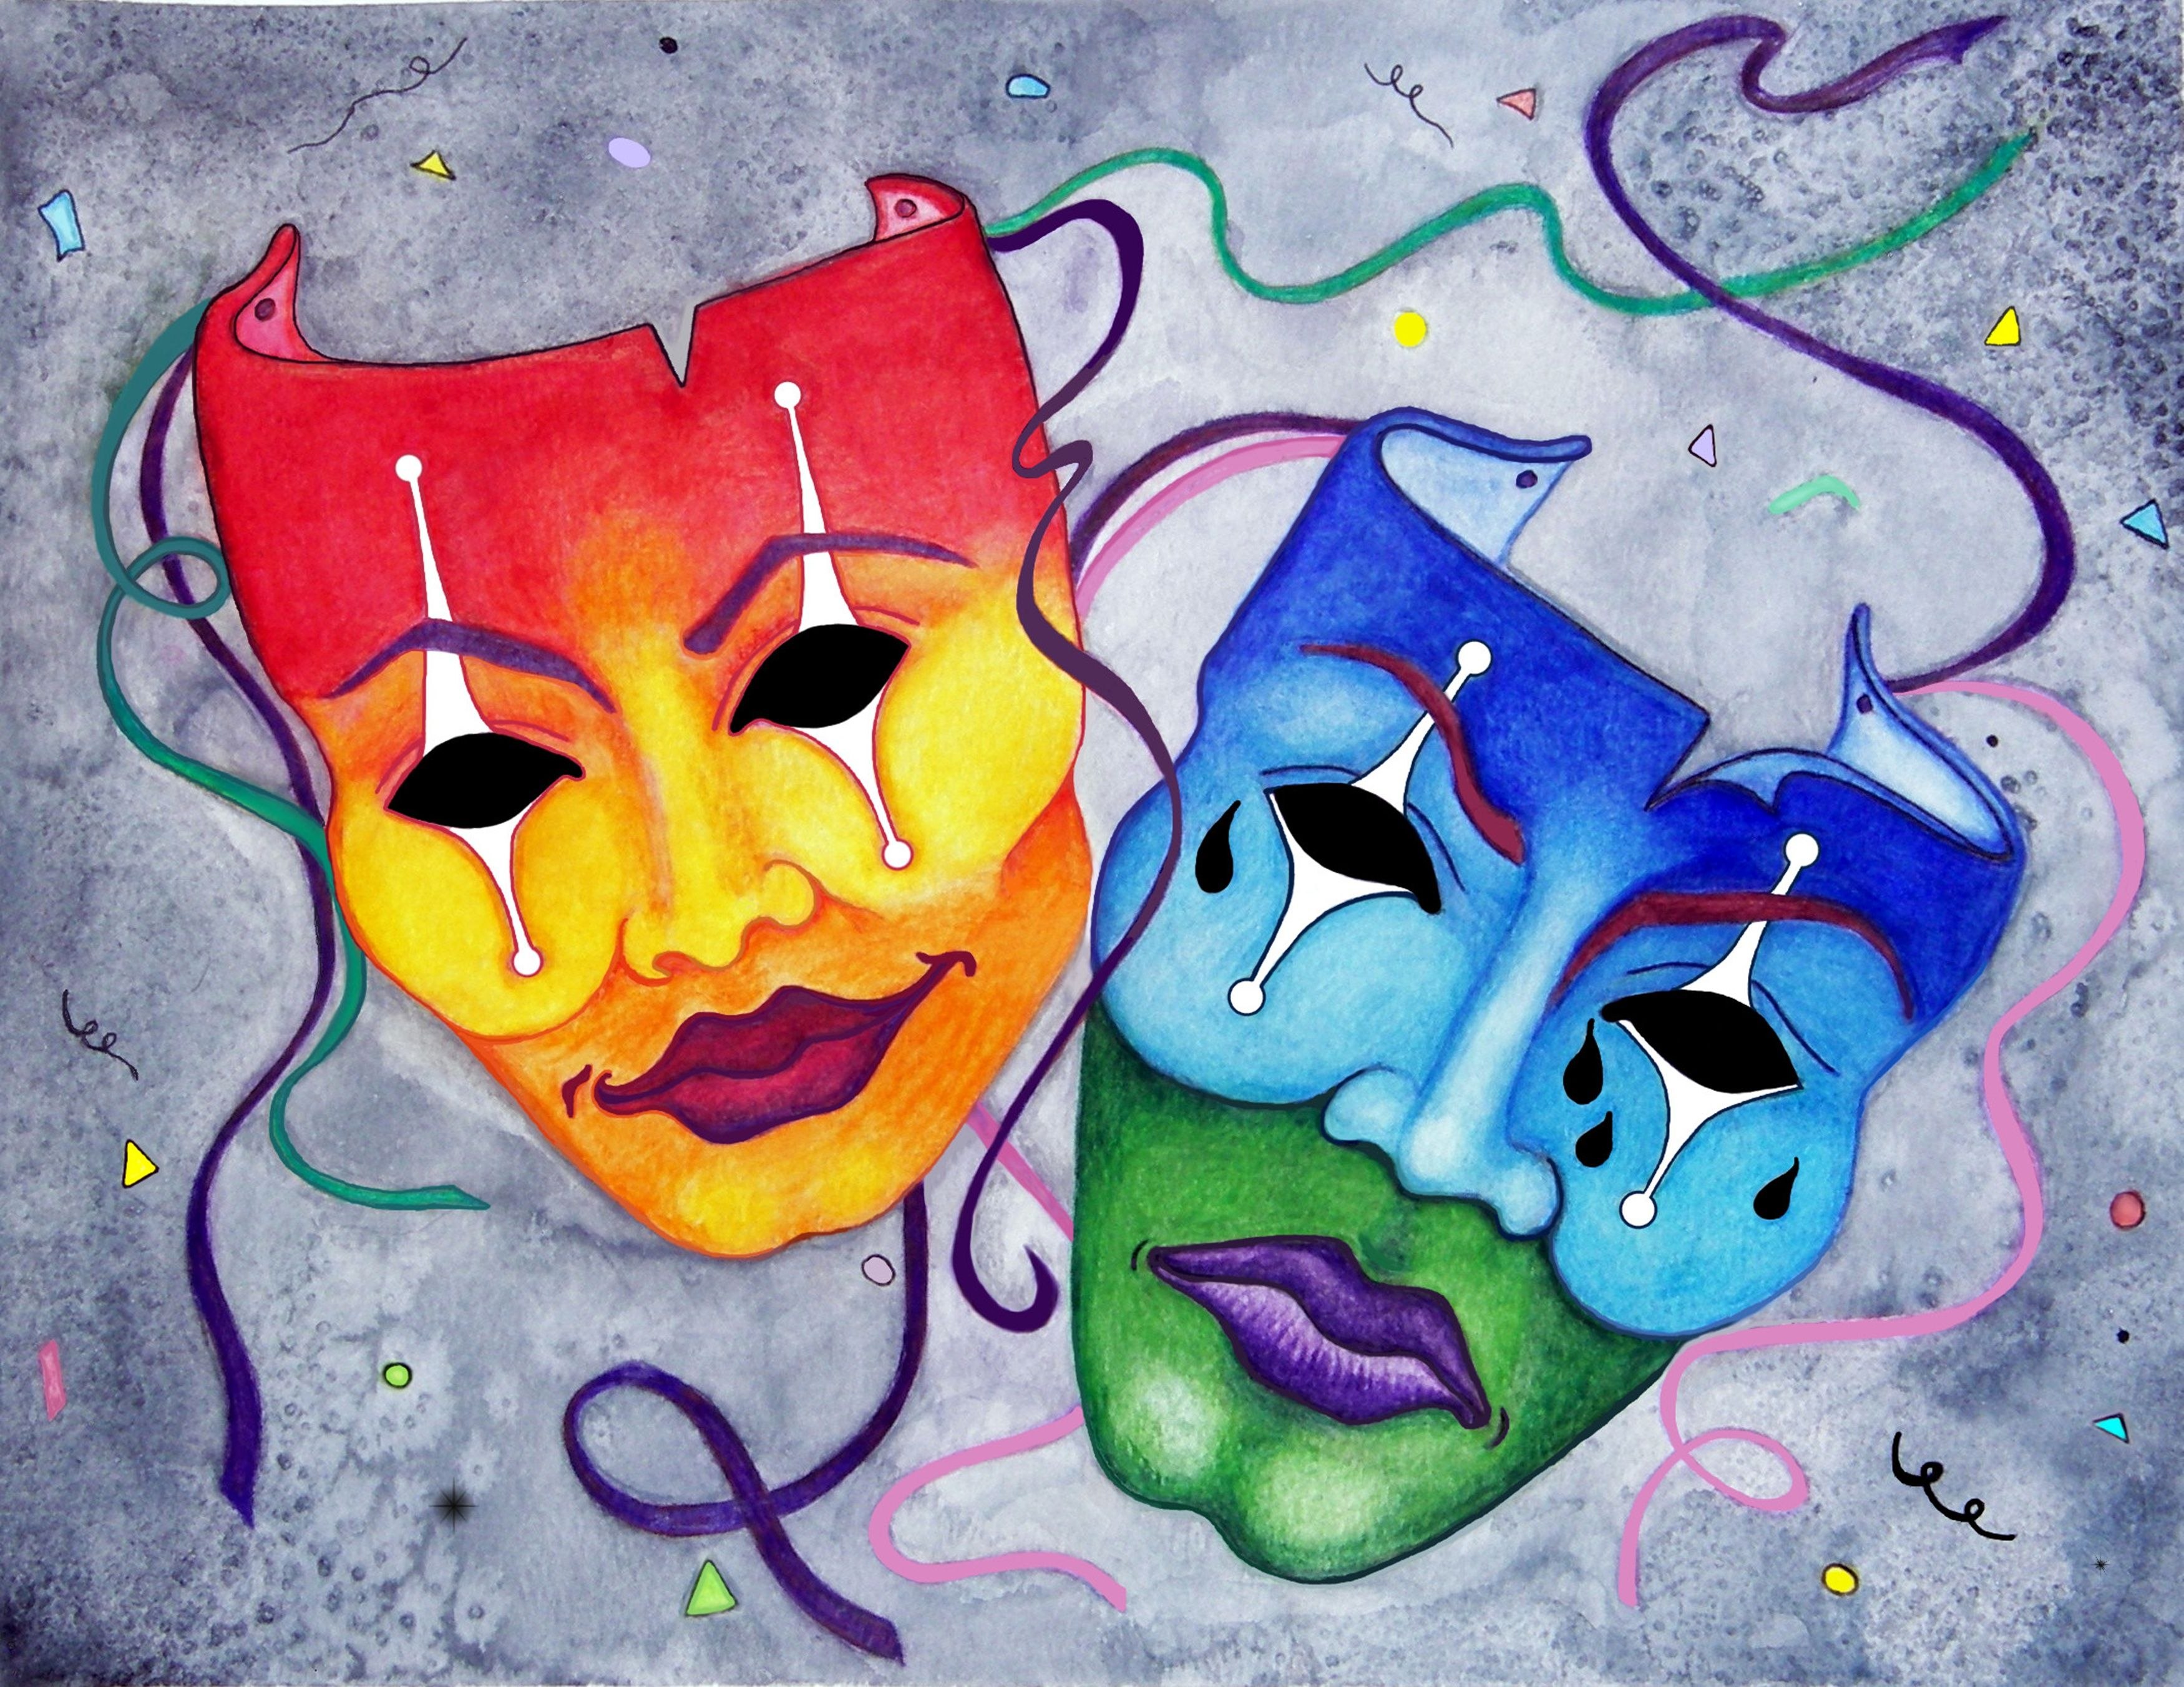 Рисунок в цвете театральной маски жанр любой - Zefirka.club фото и картинки